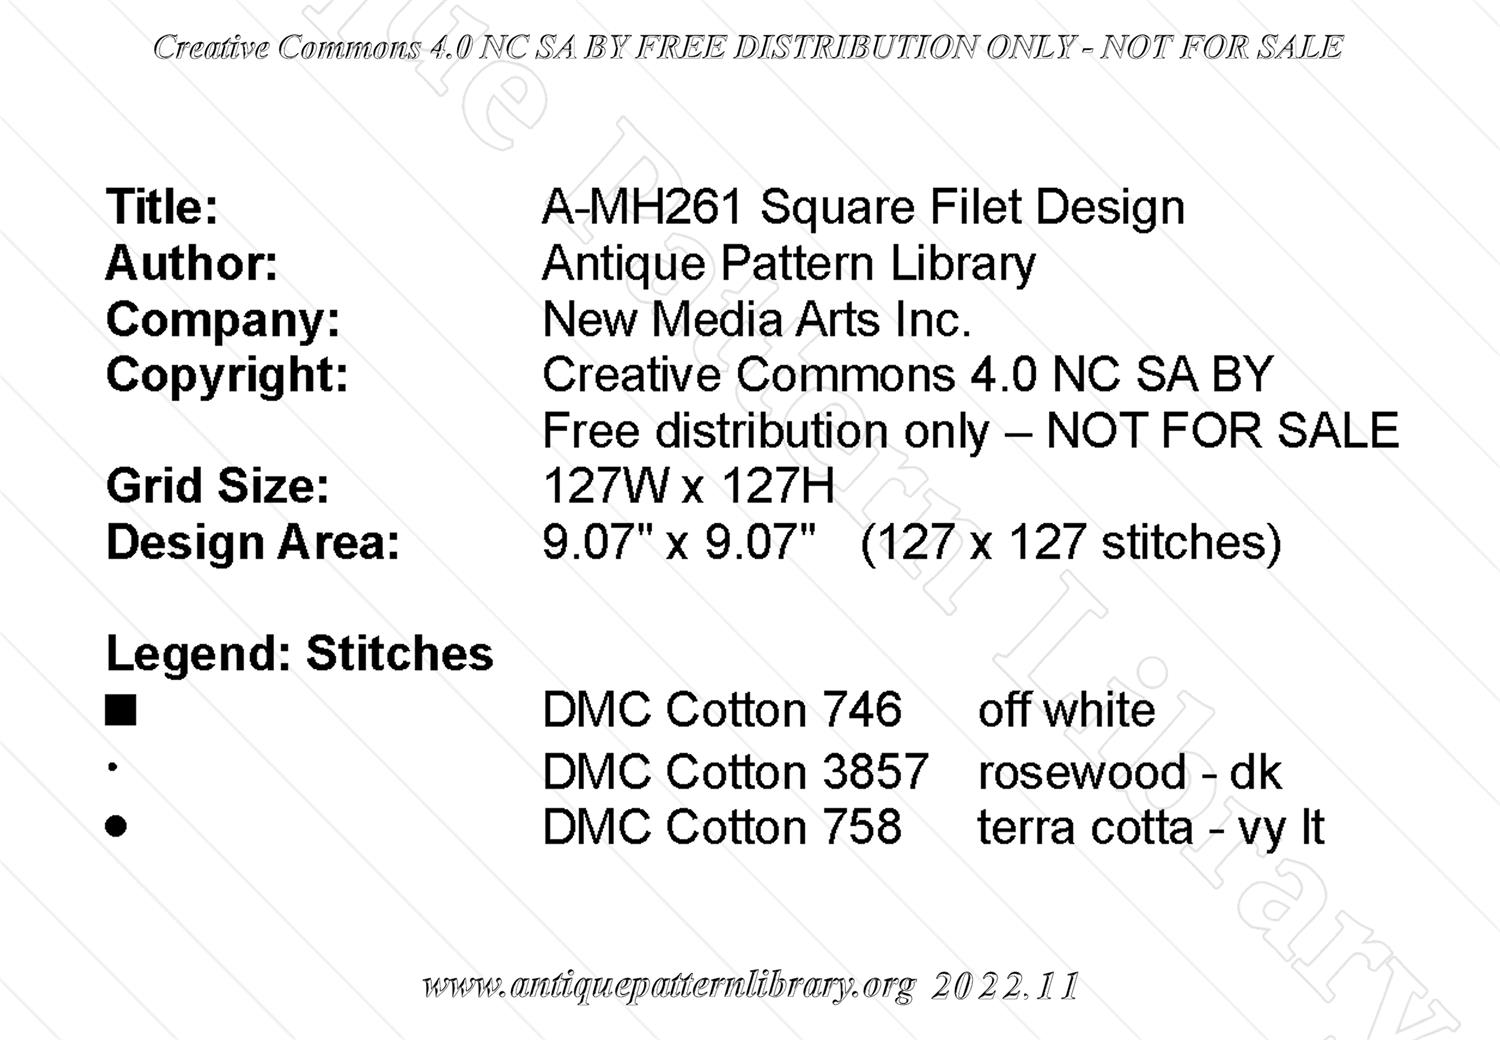 A-MH261 Square Filet Design